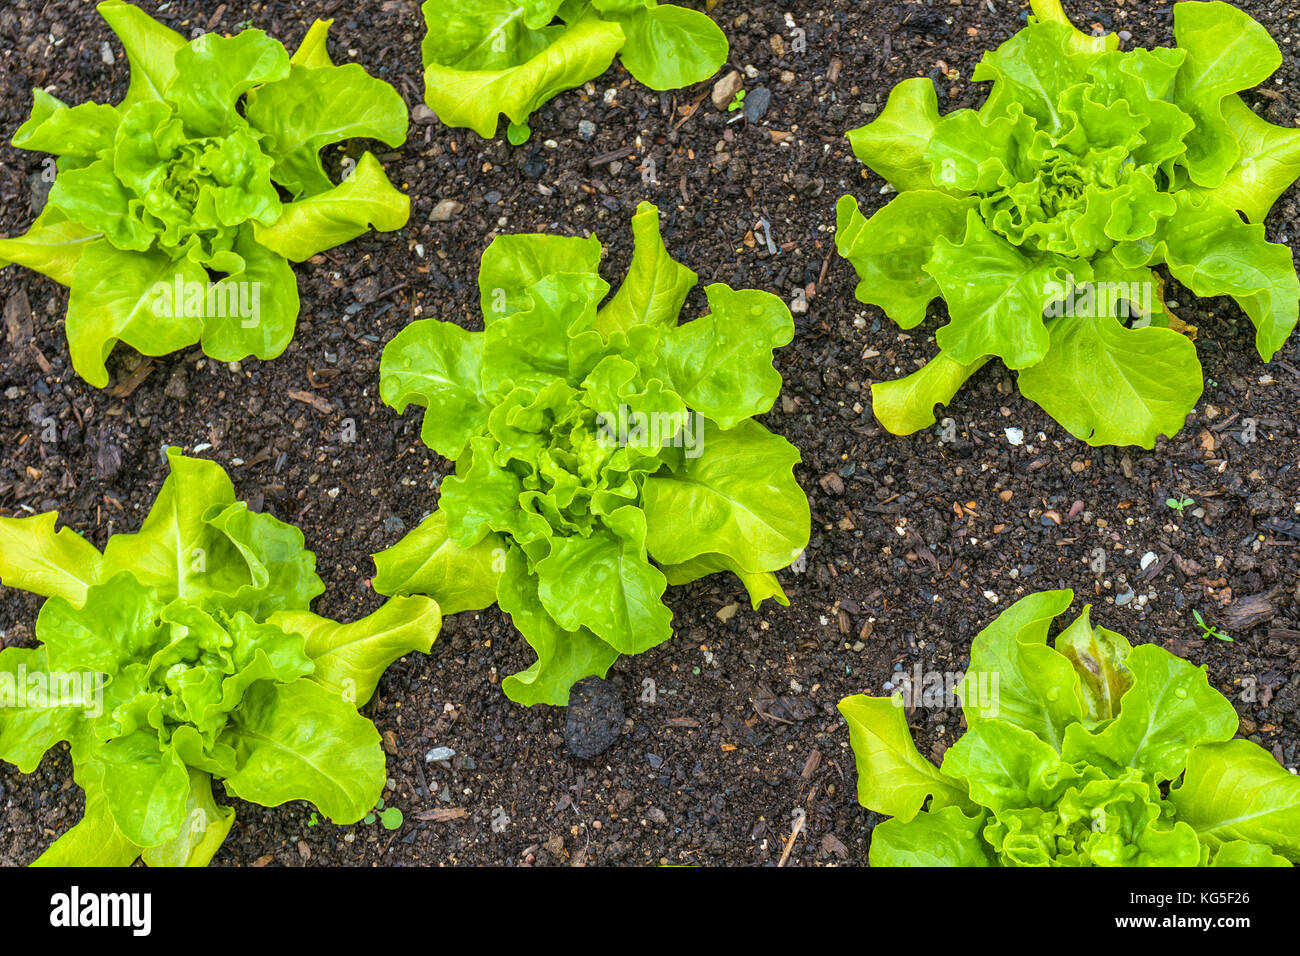 Grünes Blatt kopfsalat sind eine Gruppe von kopfsalat Sorten mit grünen Blättern. Stockfoto